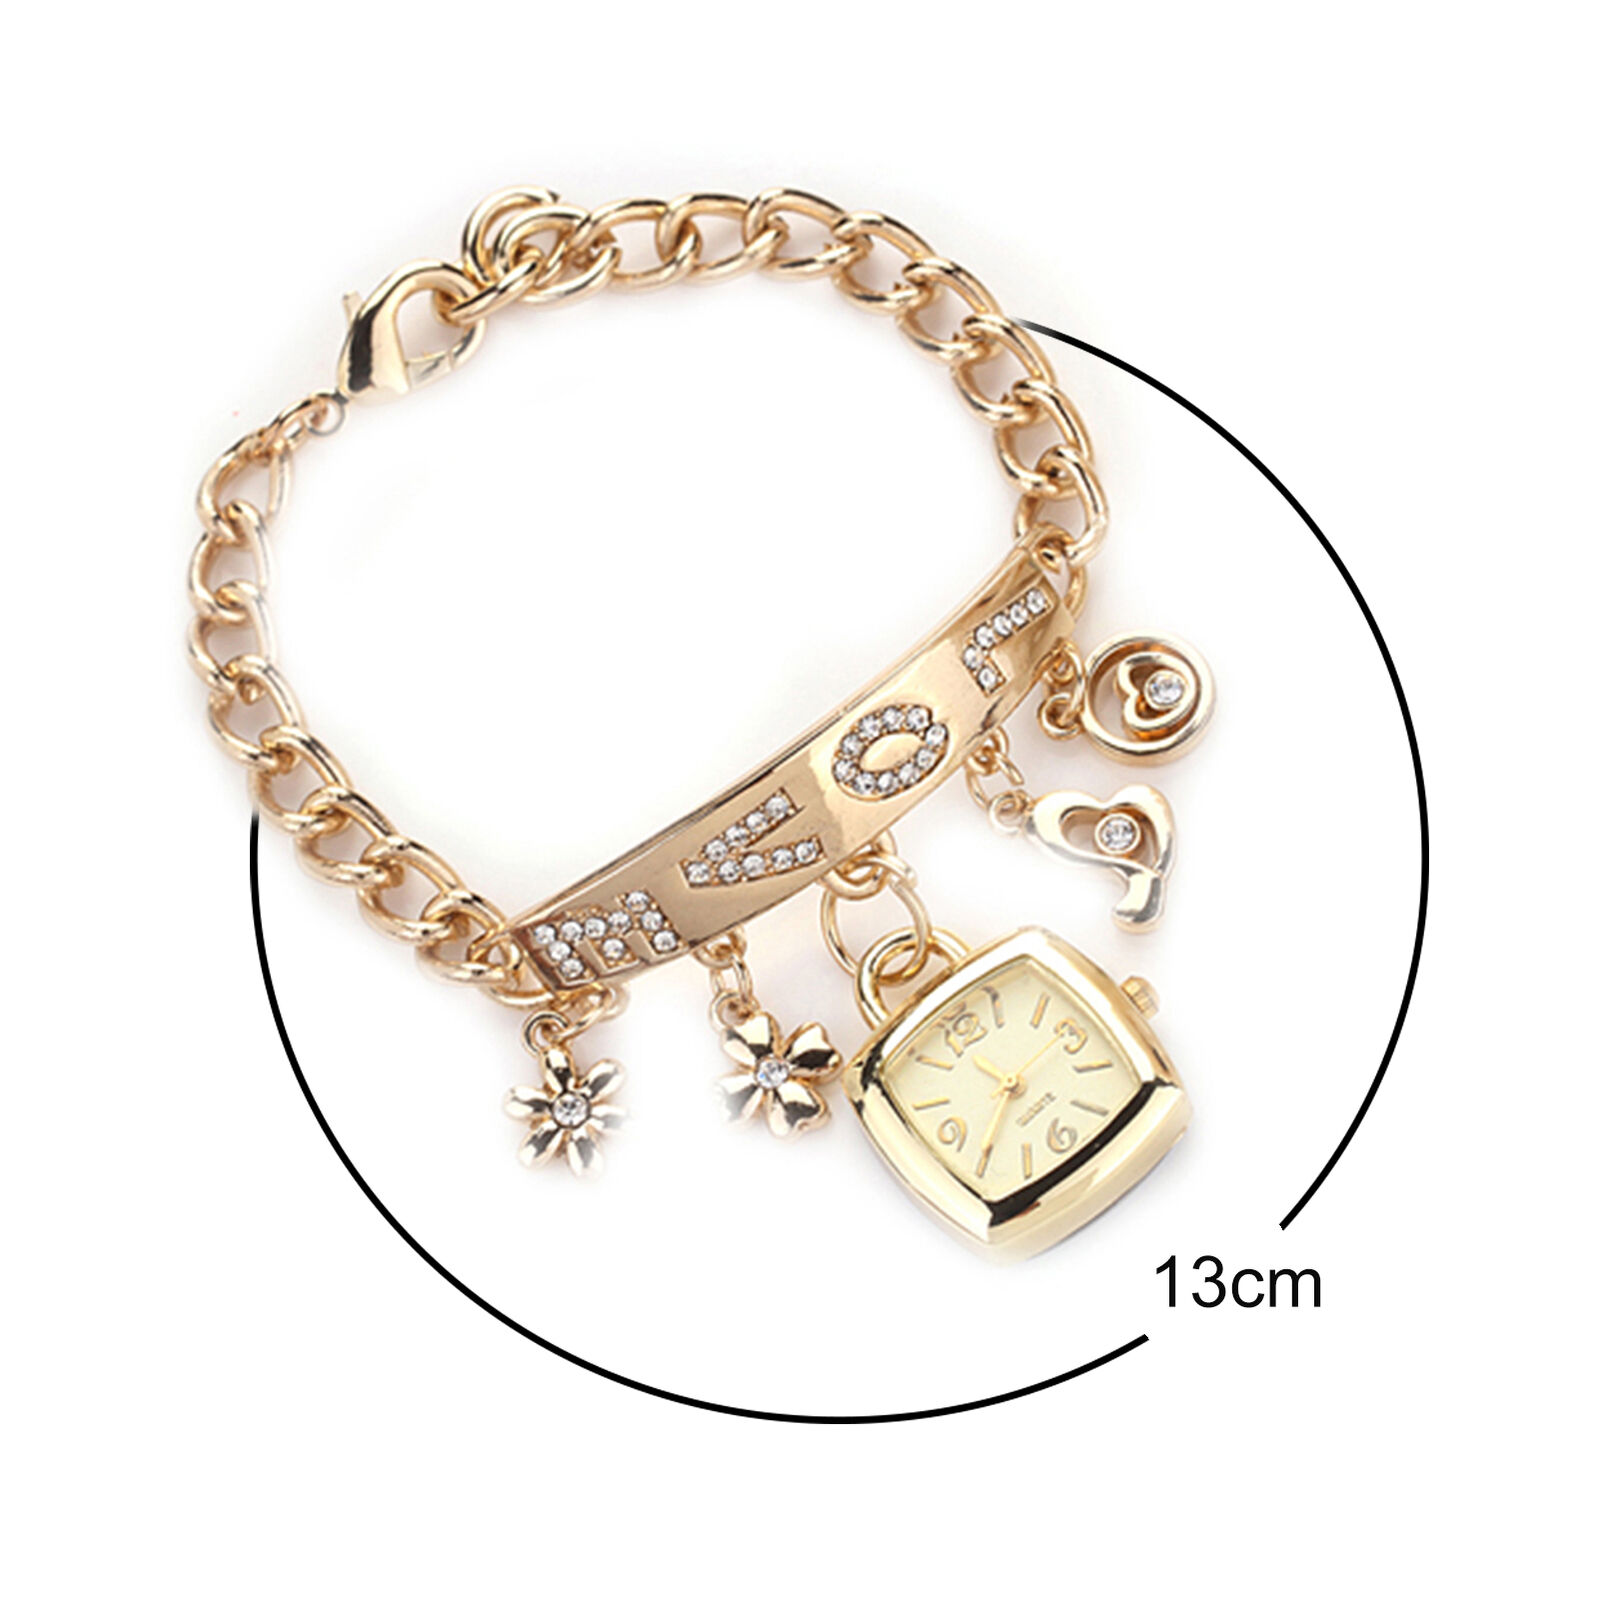 Jewelry Wristwatch Wear-resistant Shiny Surface Stylish Quartz Bracelet Watch Unbranded - фотография #5